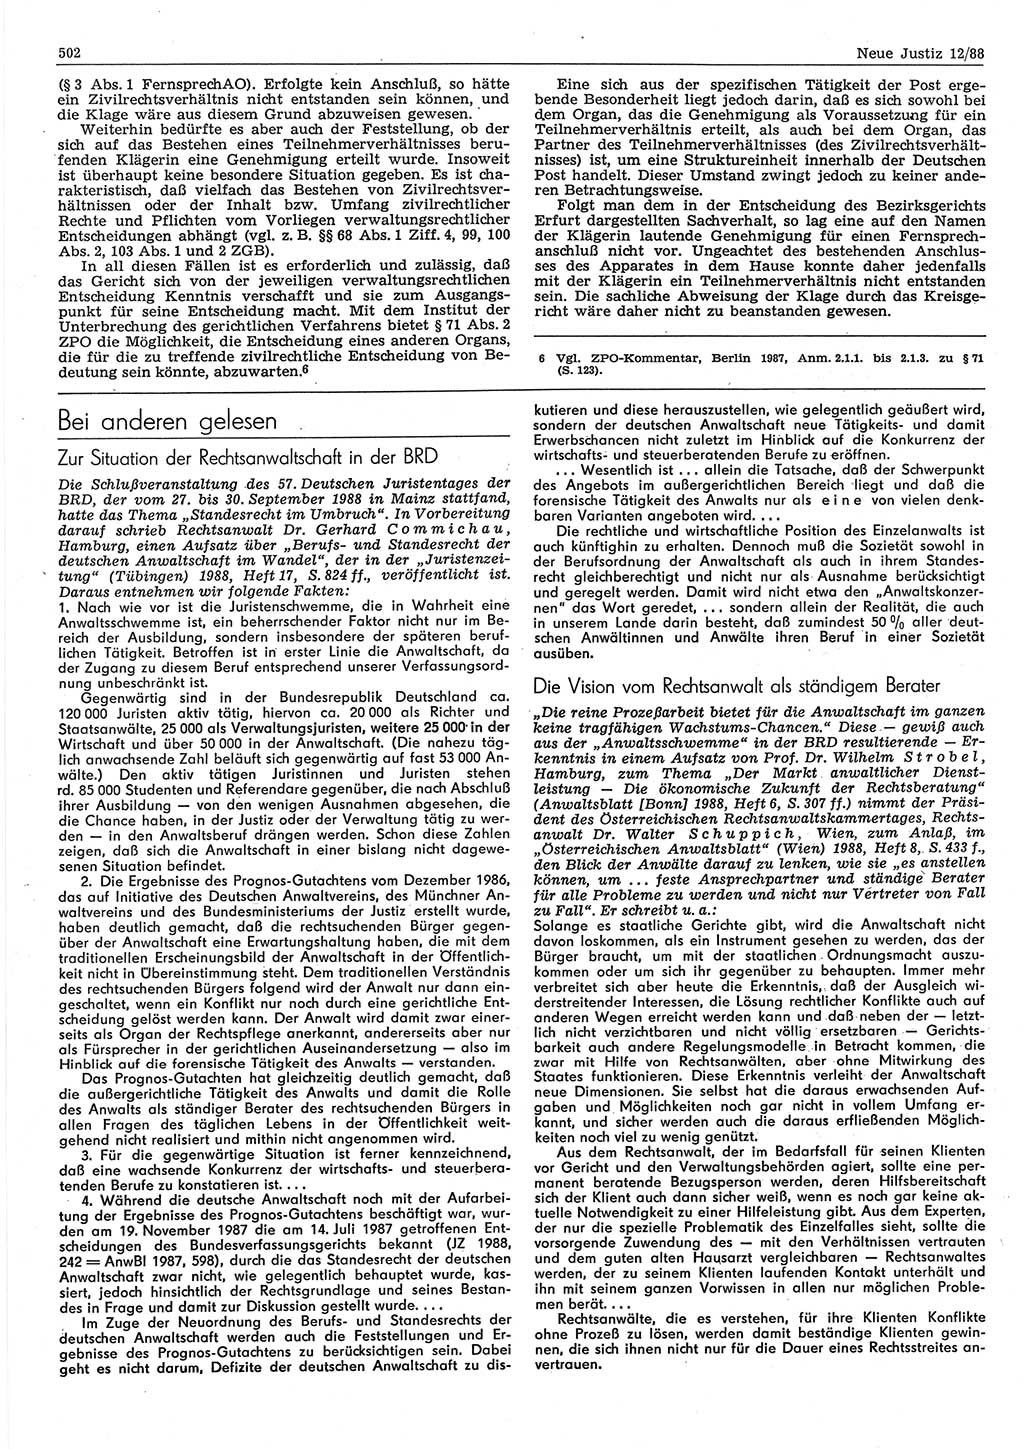 Neue Justiz (NJ), Zeitschrift für sozialistisches Recht und Gesetzlichkeit [Deutsche Demokratische Republik (DDR)], 42. Jahrgang 1988, Seite 502 (NJ DDR 1988, S. 502)